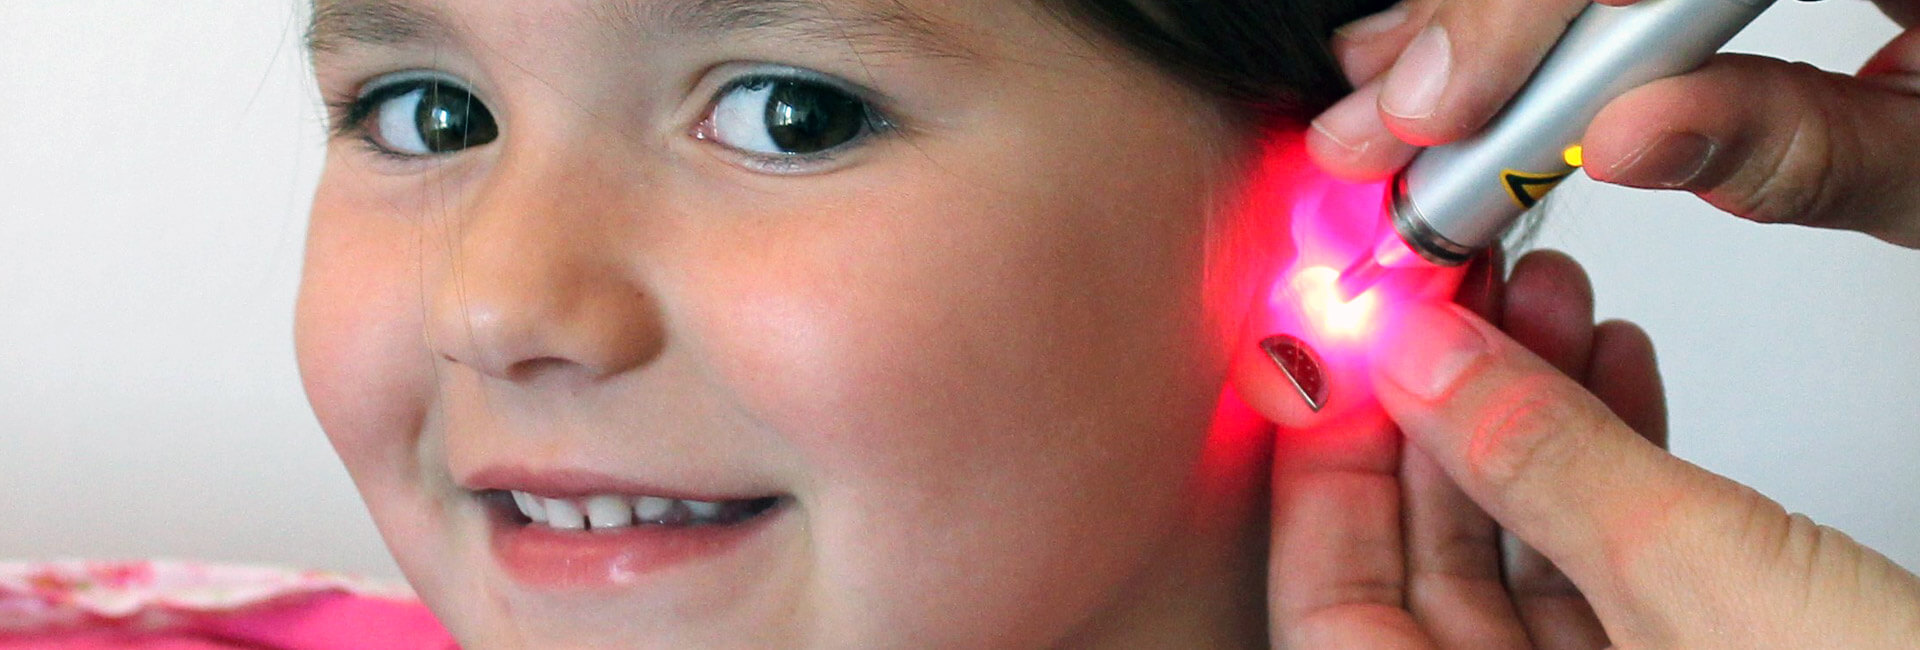 Ohr Laserakupunktur Kinderärztin